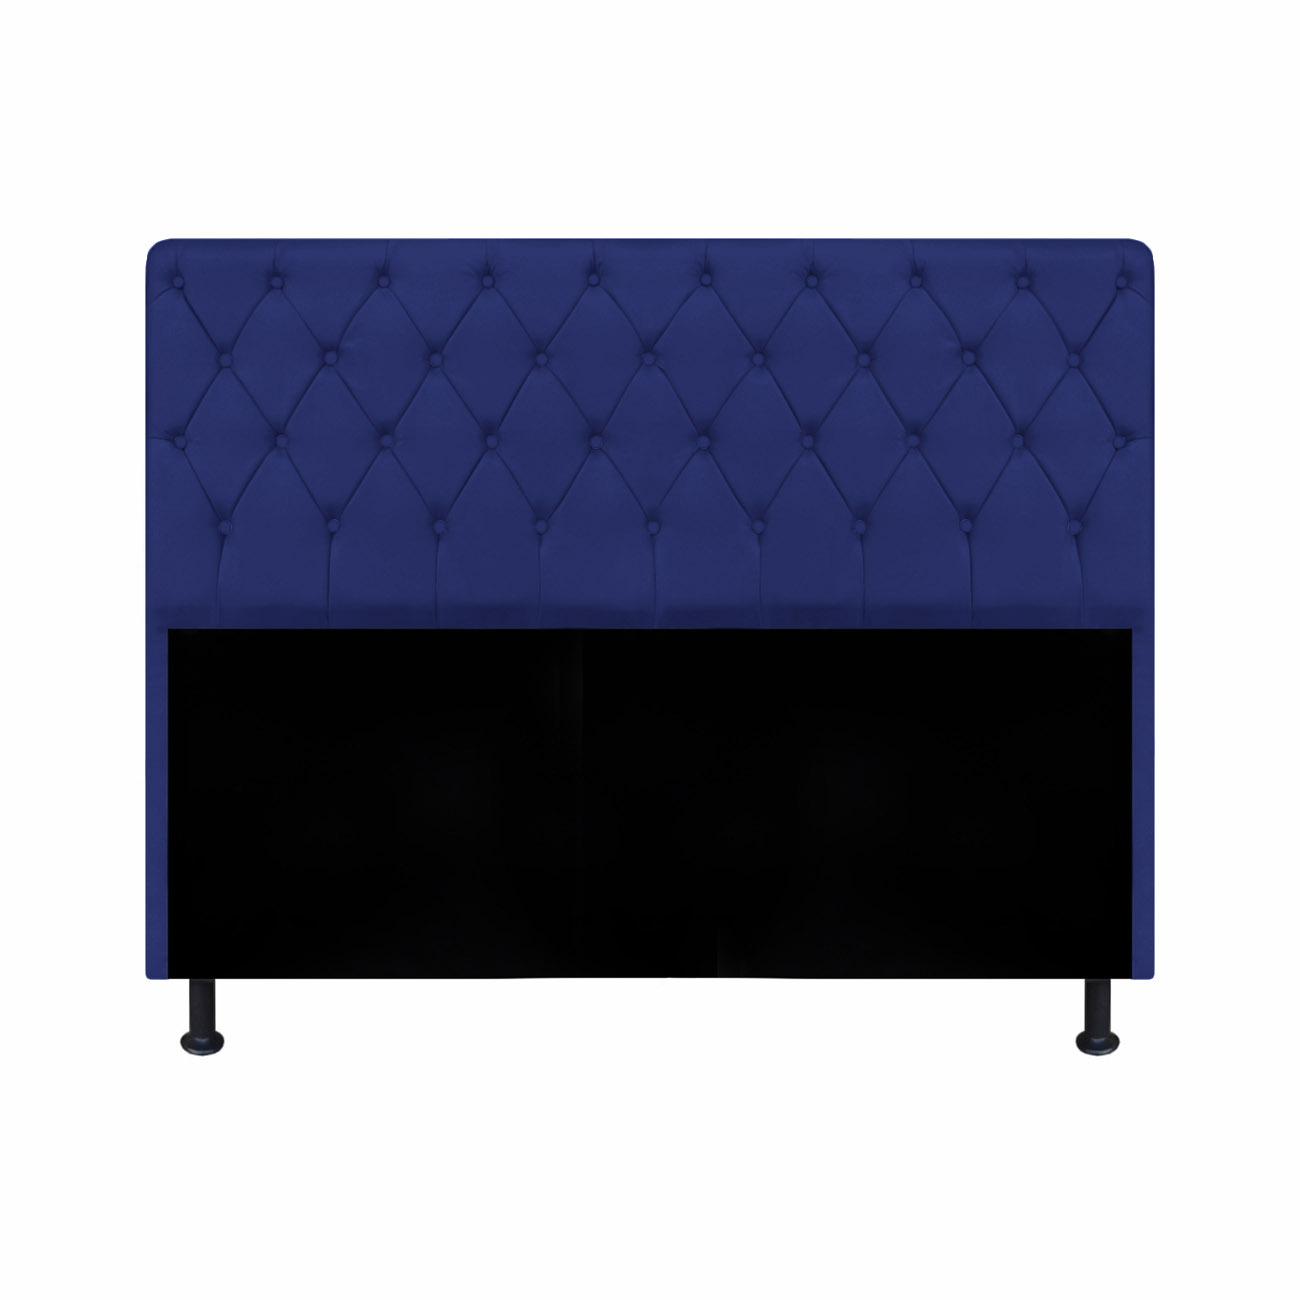 Cabeceira Estofada Cristal Casal Queen 160cm Suede Azul Marinho - AM Interiores